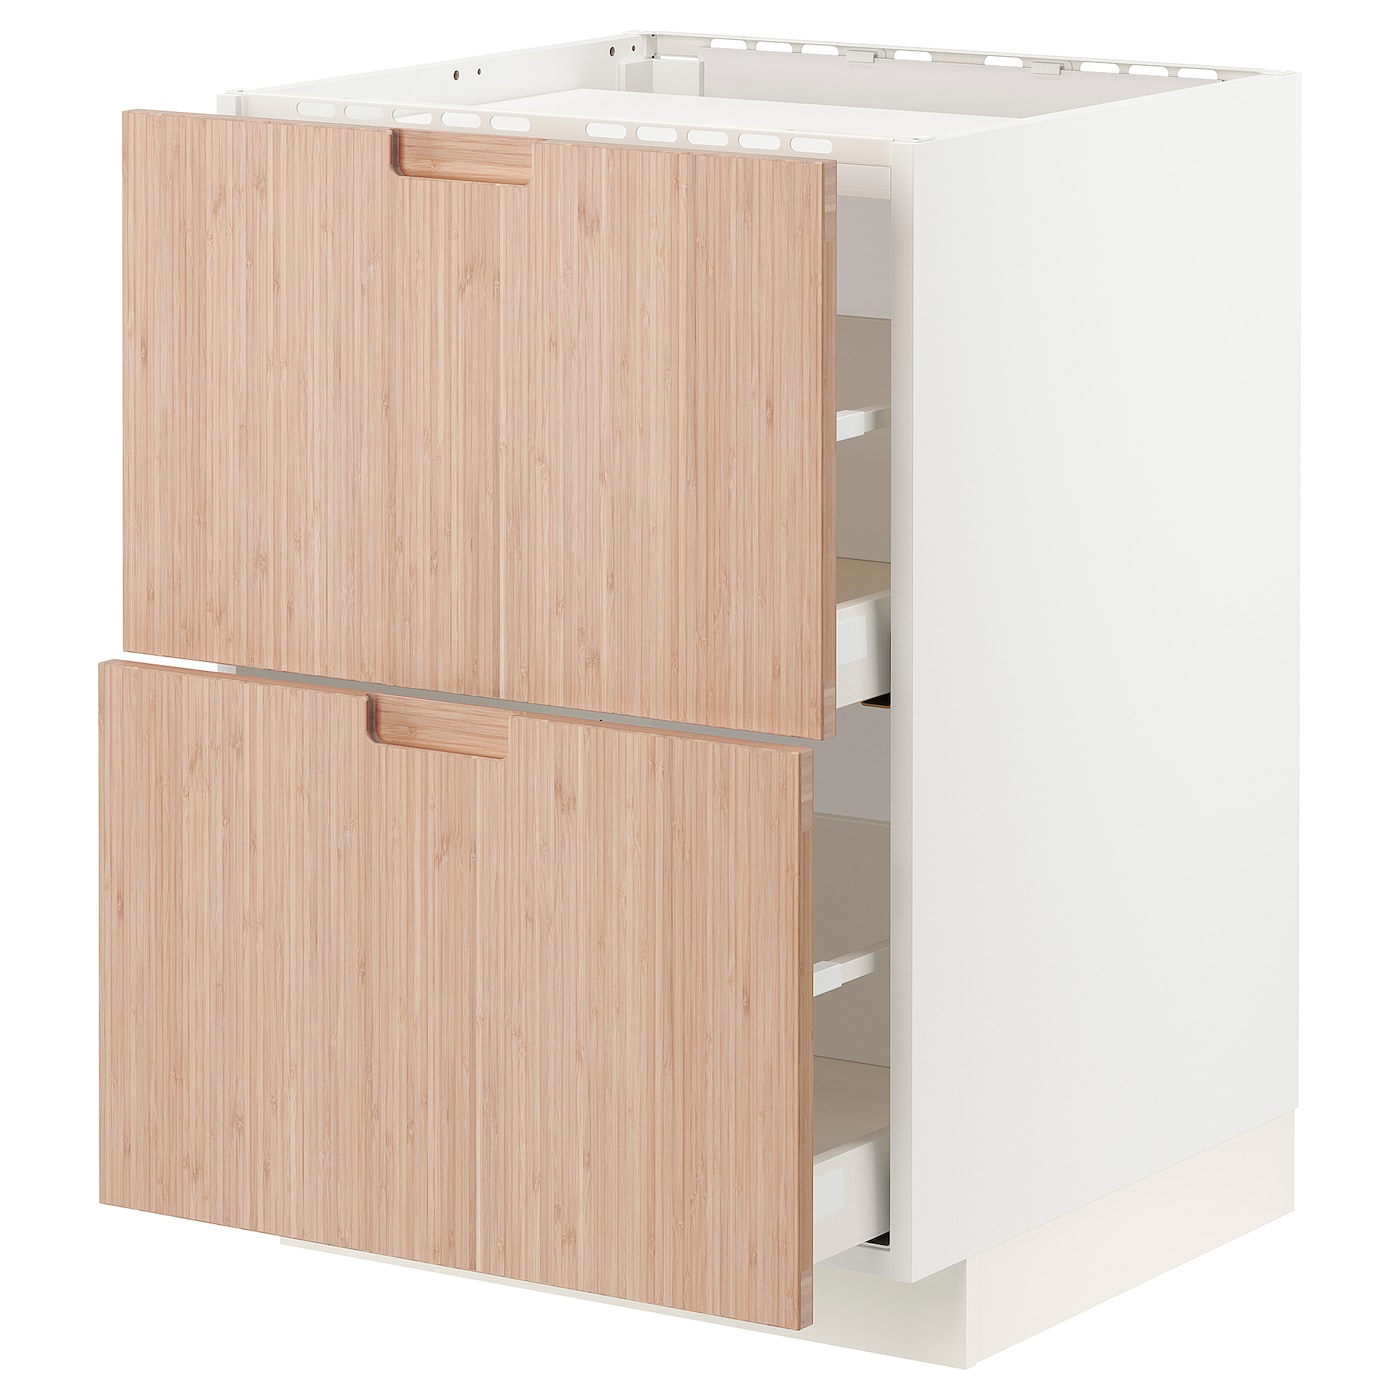 Напольный шкаф - IKEA METOD MAXIMERA, 88x62x60см, белый/светлый бамбук, МЕТОД МАКСИМЕРА ИКЕА